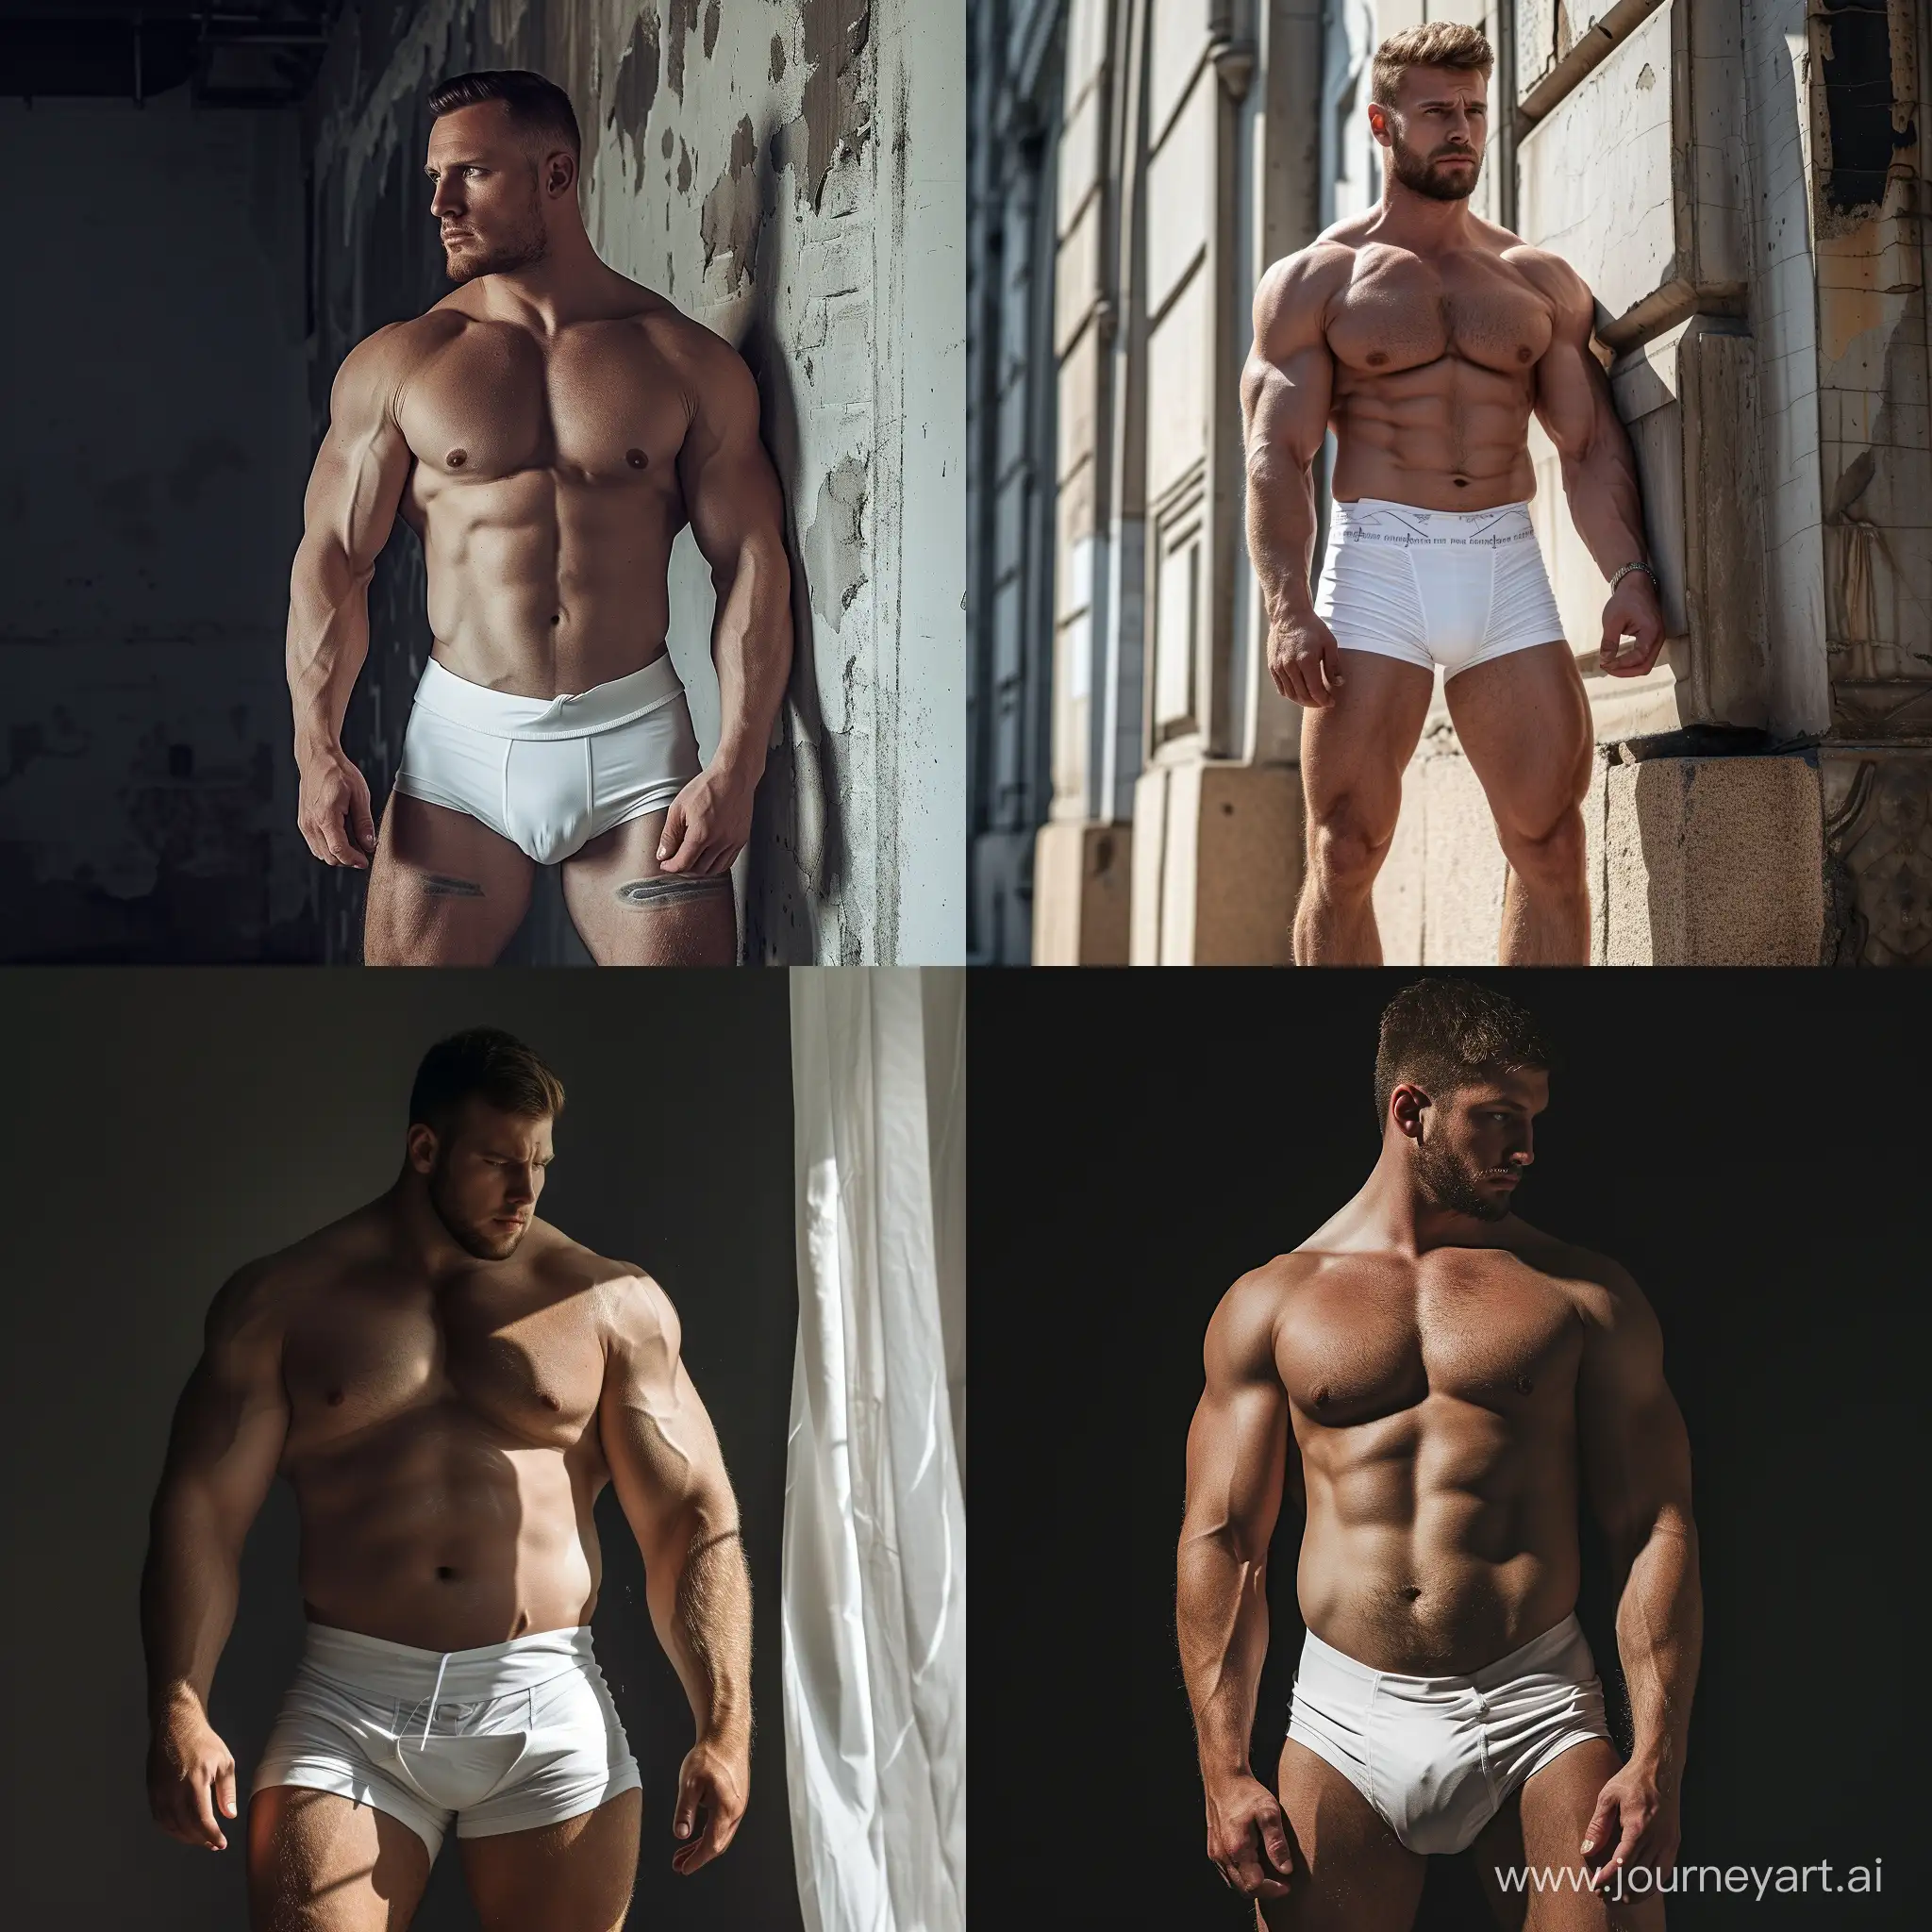 реклама нижнего мужского белья, мужчина 80 кг, атлетическая форма, брутал, белое белье, 